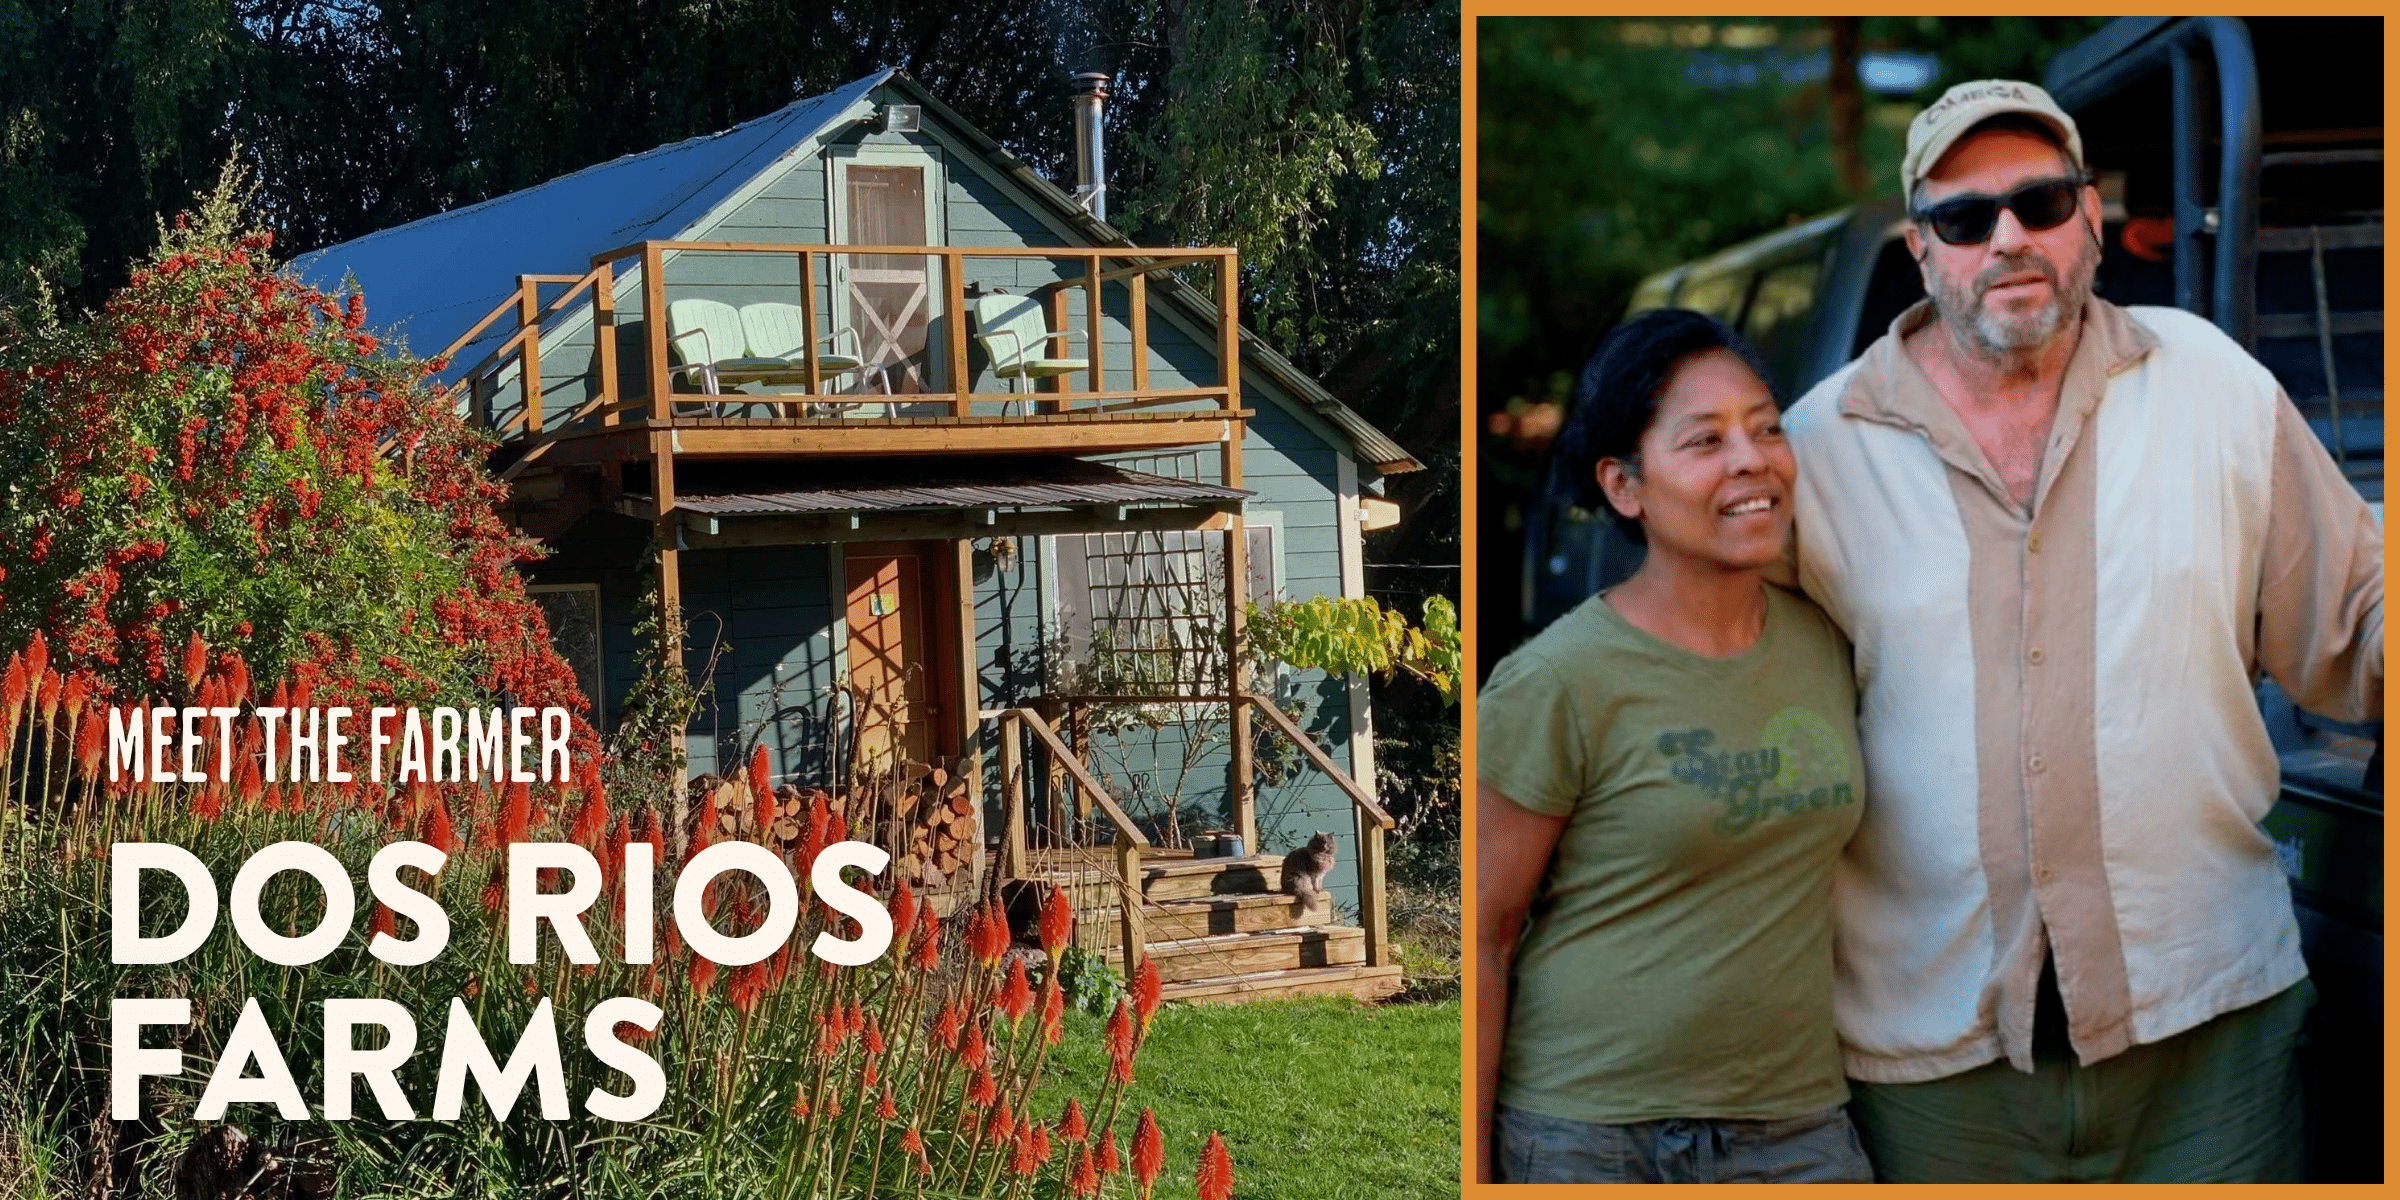 Meet the Farmer Dos Rios Farms